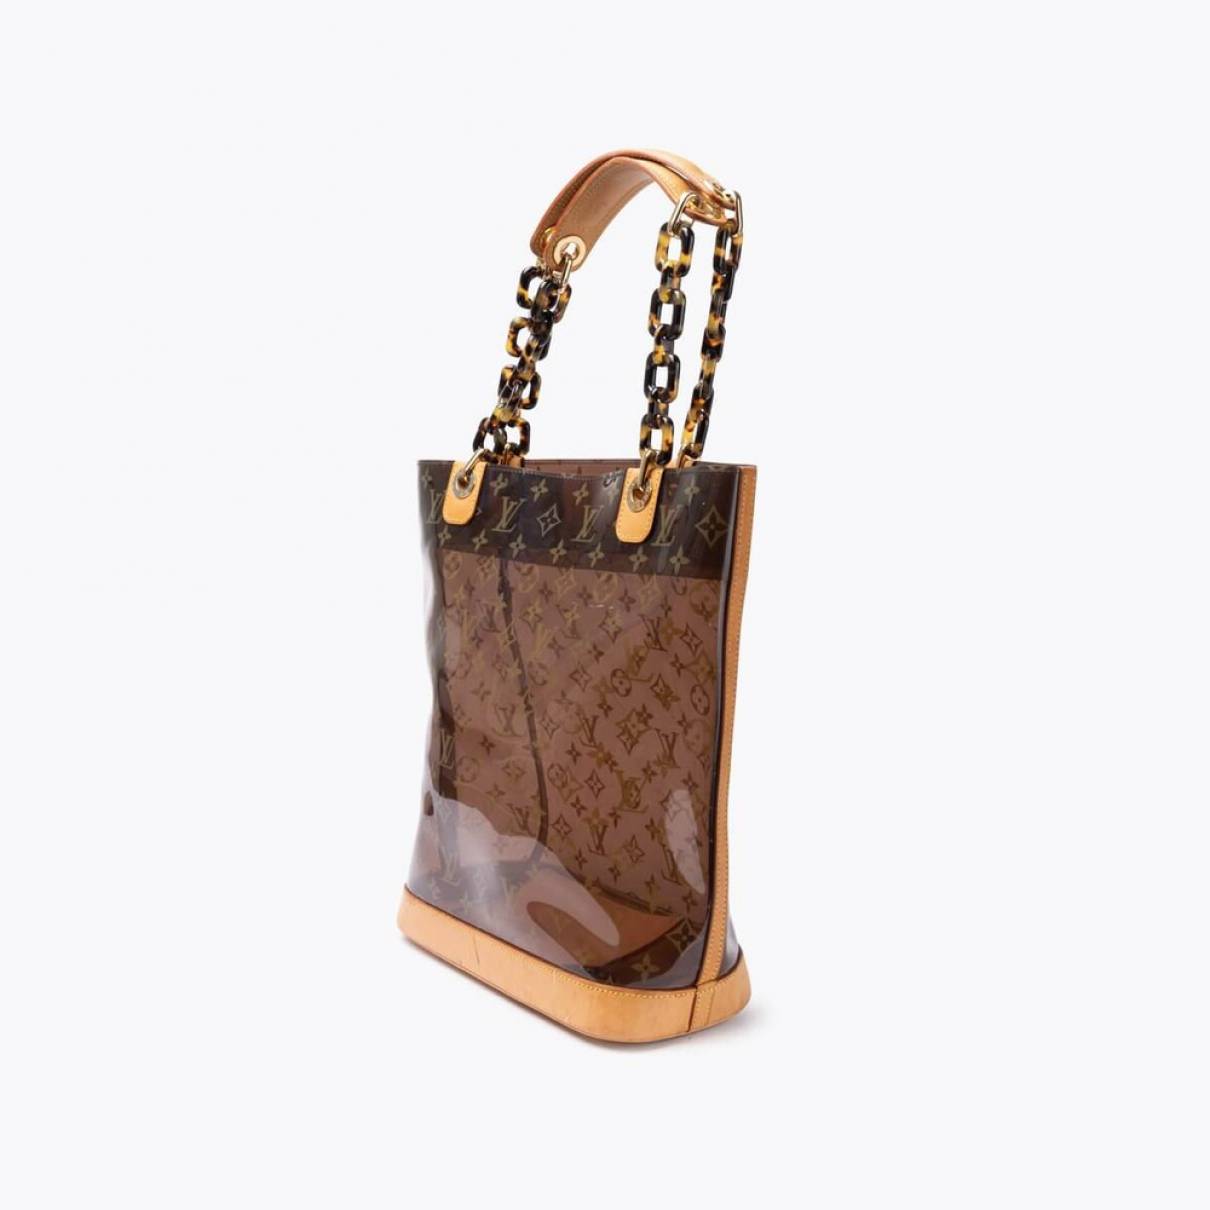 Louis Vuitton - Authenticated Ambre Handbag - Plastic Black Plain for Women, Very Good Condition